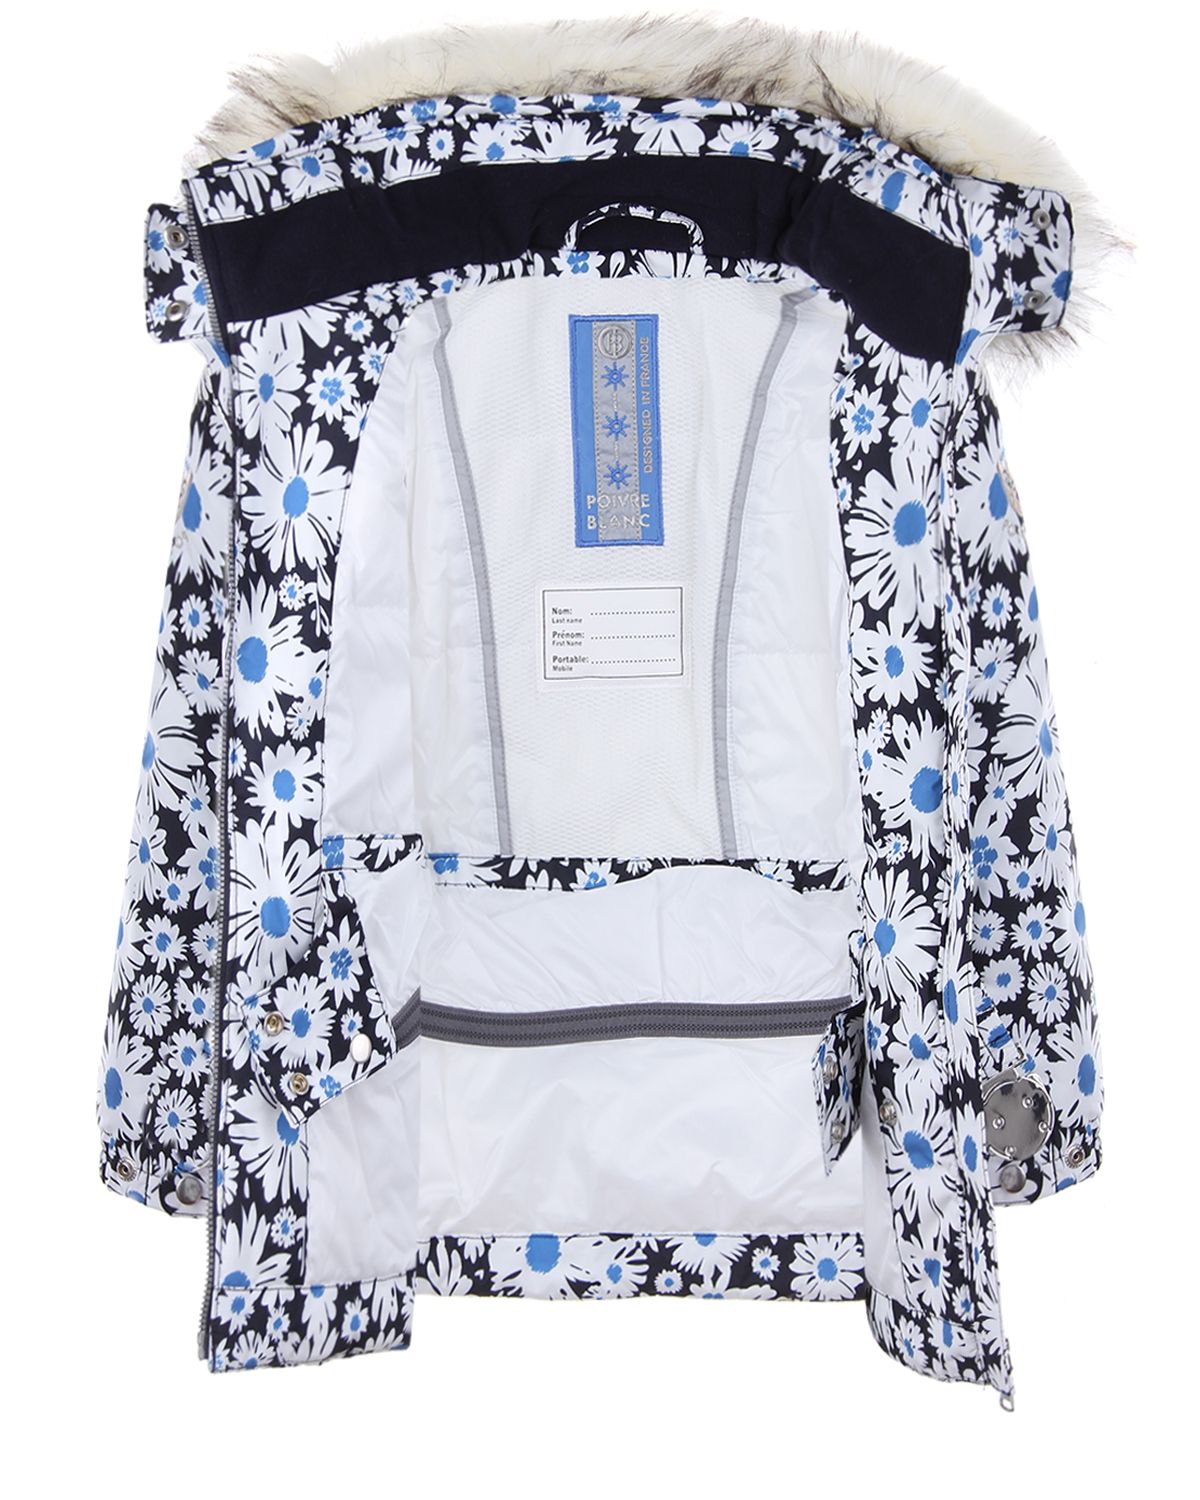 Зимний комплект из куртки и полукомбинезона для девочек Poivre Blanc детский, размер 104, цвет нет цвета - фото 3